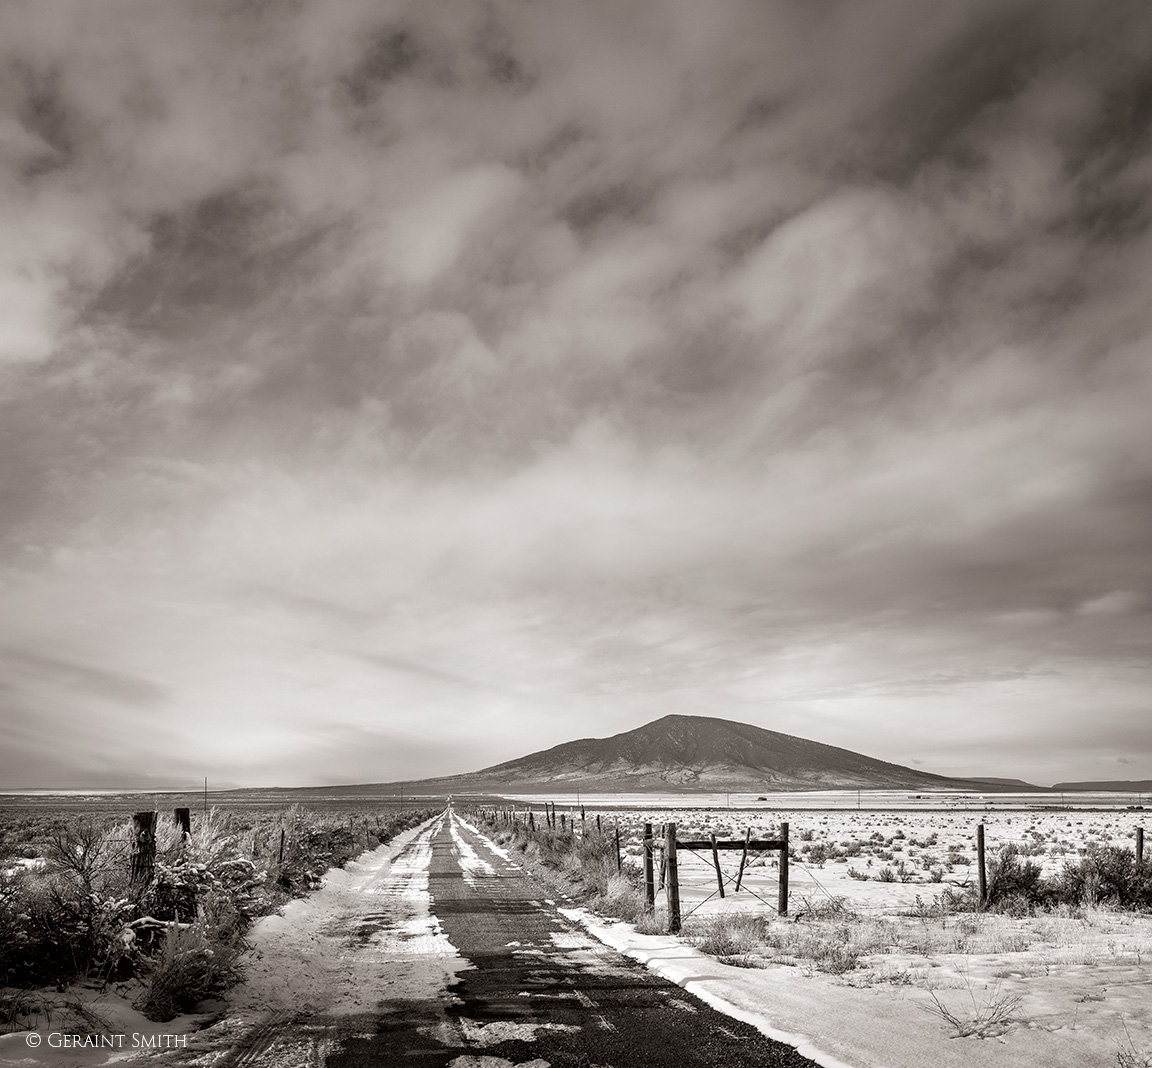 Ute Mountain road, NM